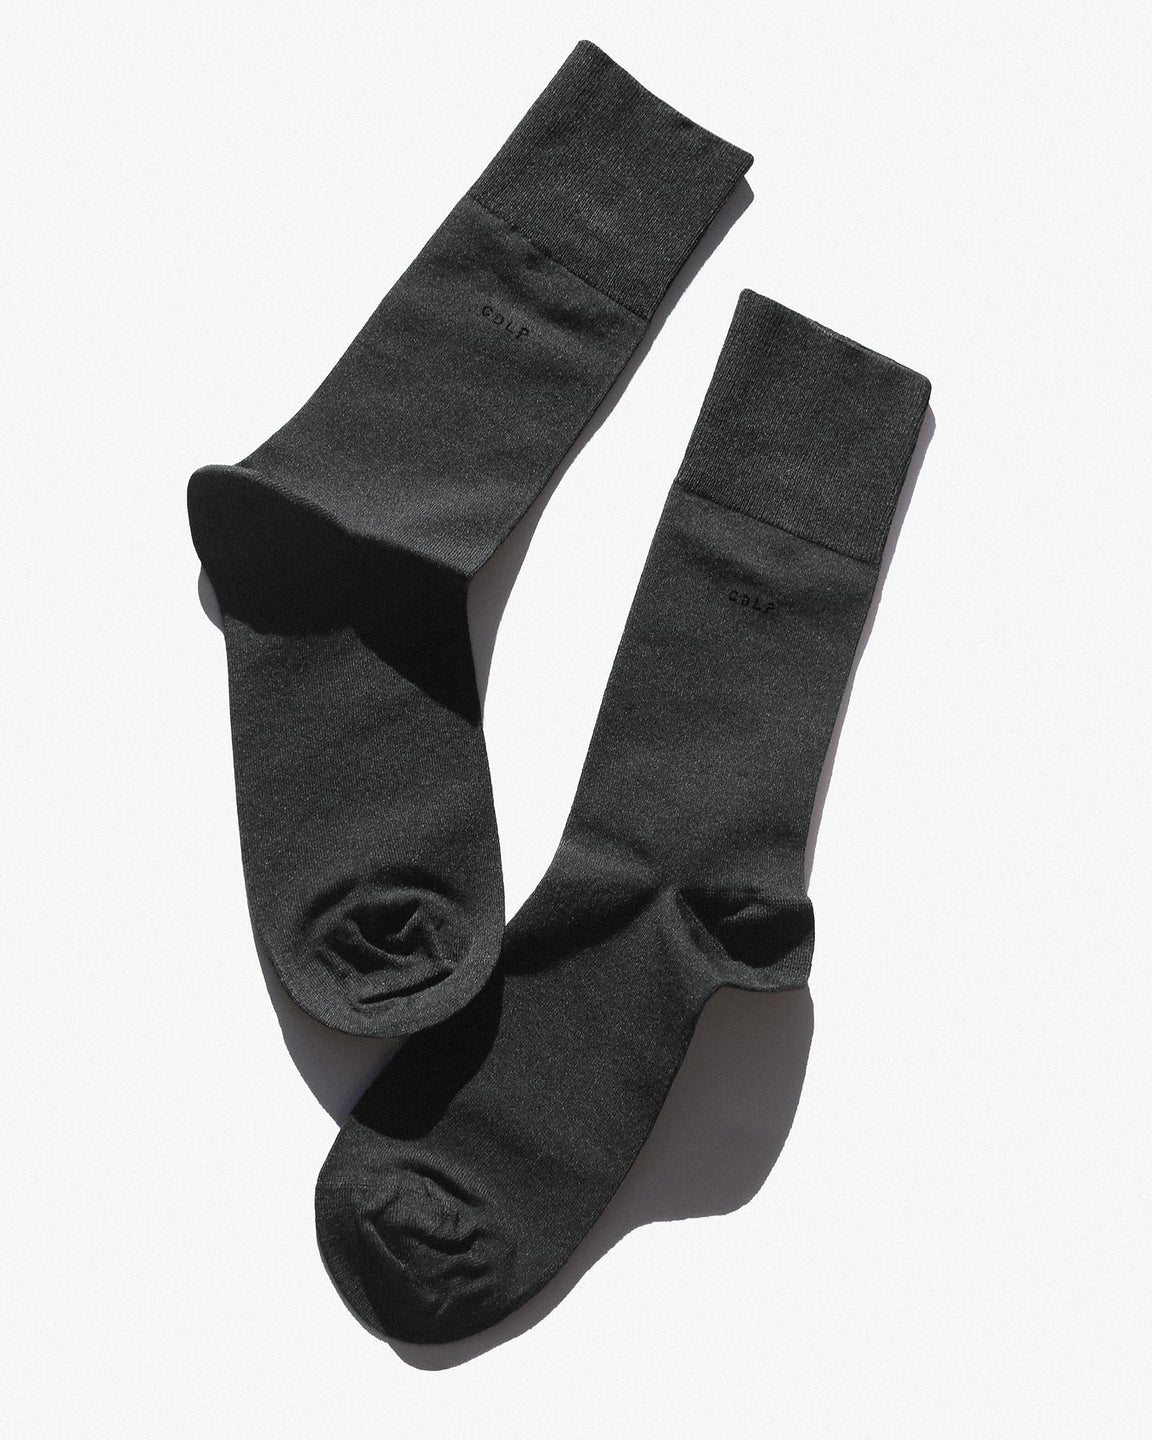 bamboo-socks-charcoal-grey-cdlp-1_1152x1440_da3b69d0-33f4-4f5b-8bca-4700dfc39494.jpg